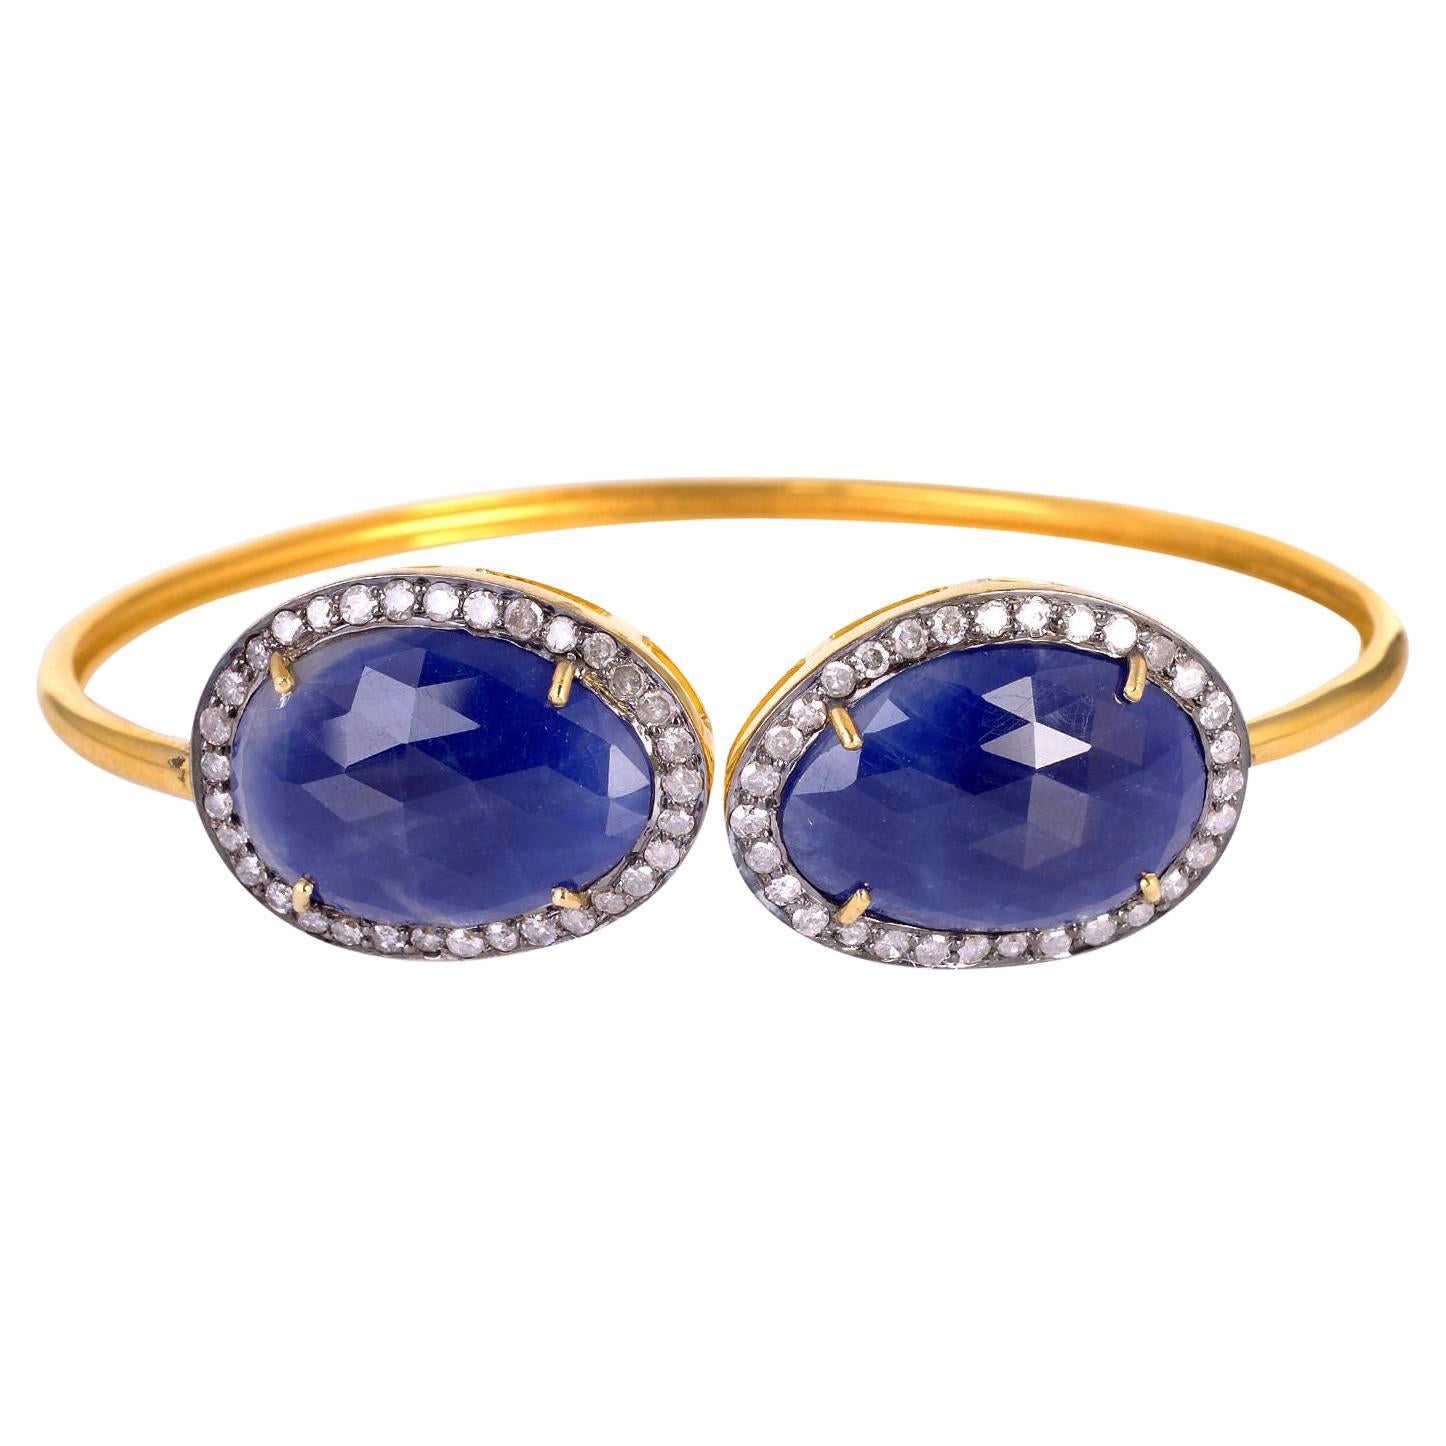 Designer-Manschettenarmband mit blauen Saphirsteinen, umgeben von Pavé-Diamanten